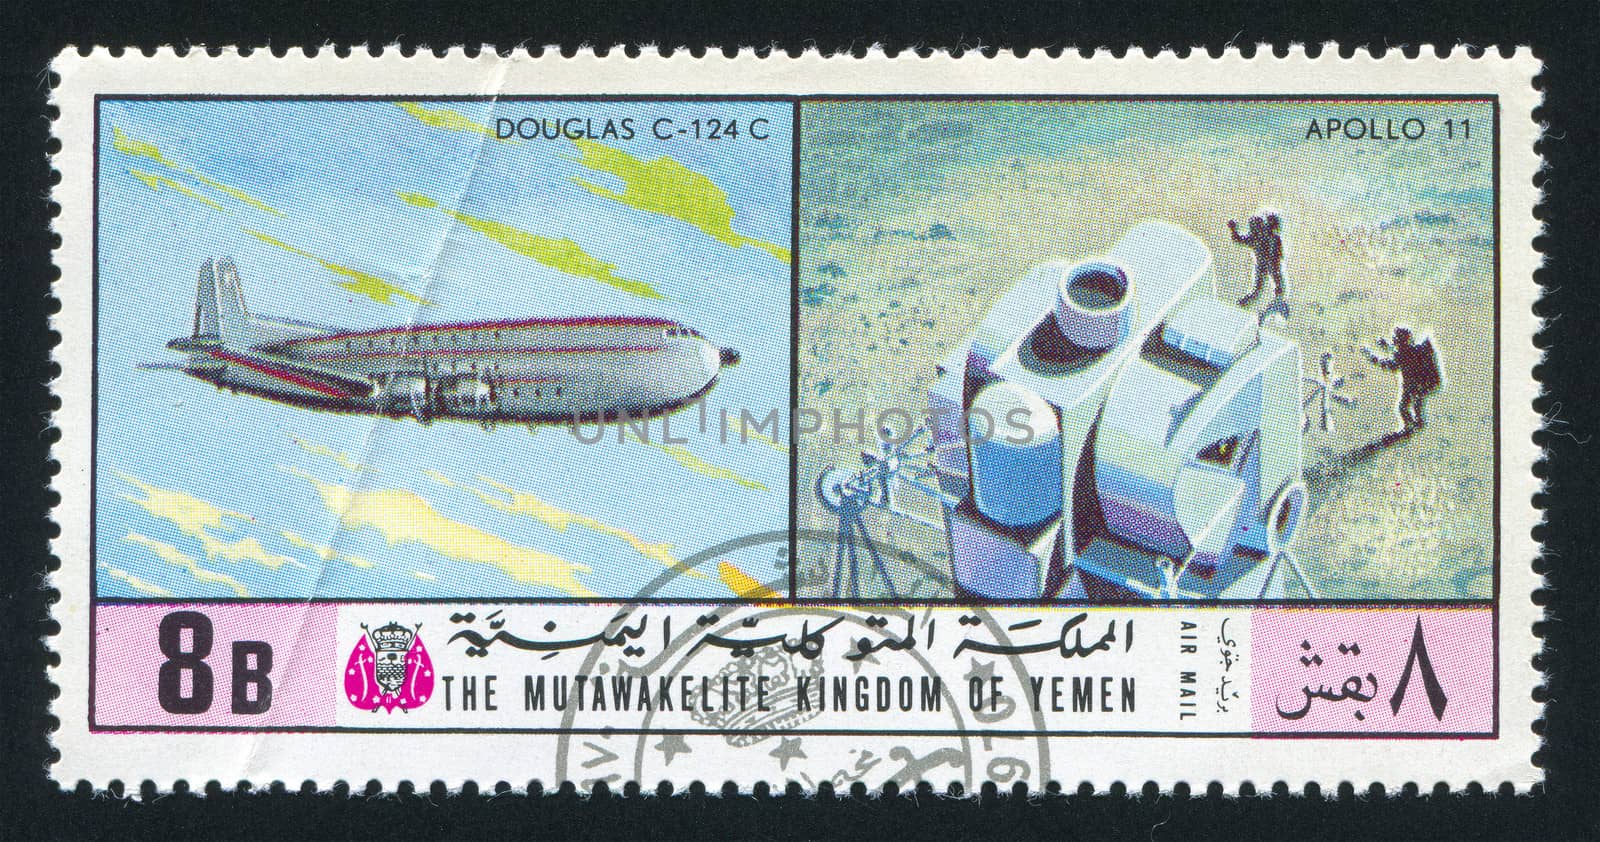 YEMEN - CIRCA 1976: stamp printed by Yemen, shows Douglas C 124 C and Apollo 11, circa 1976